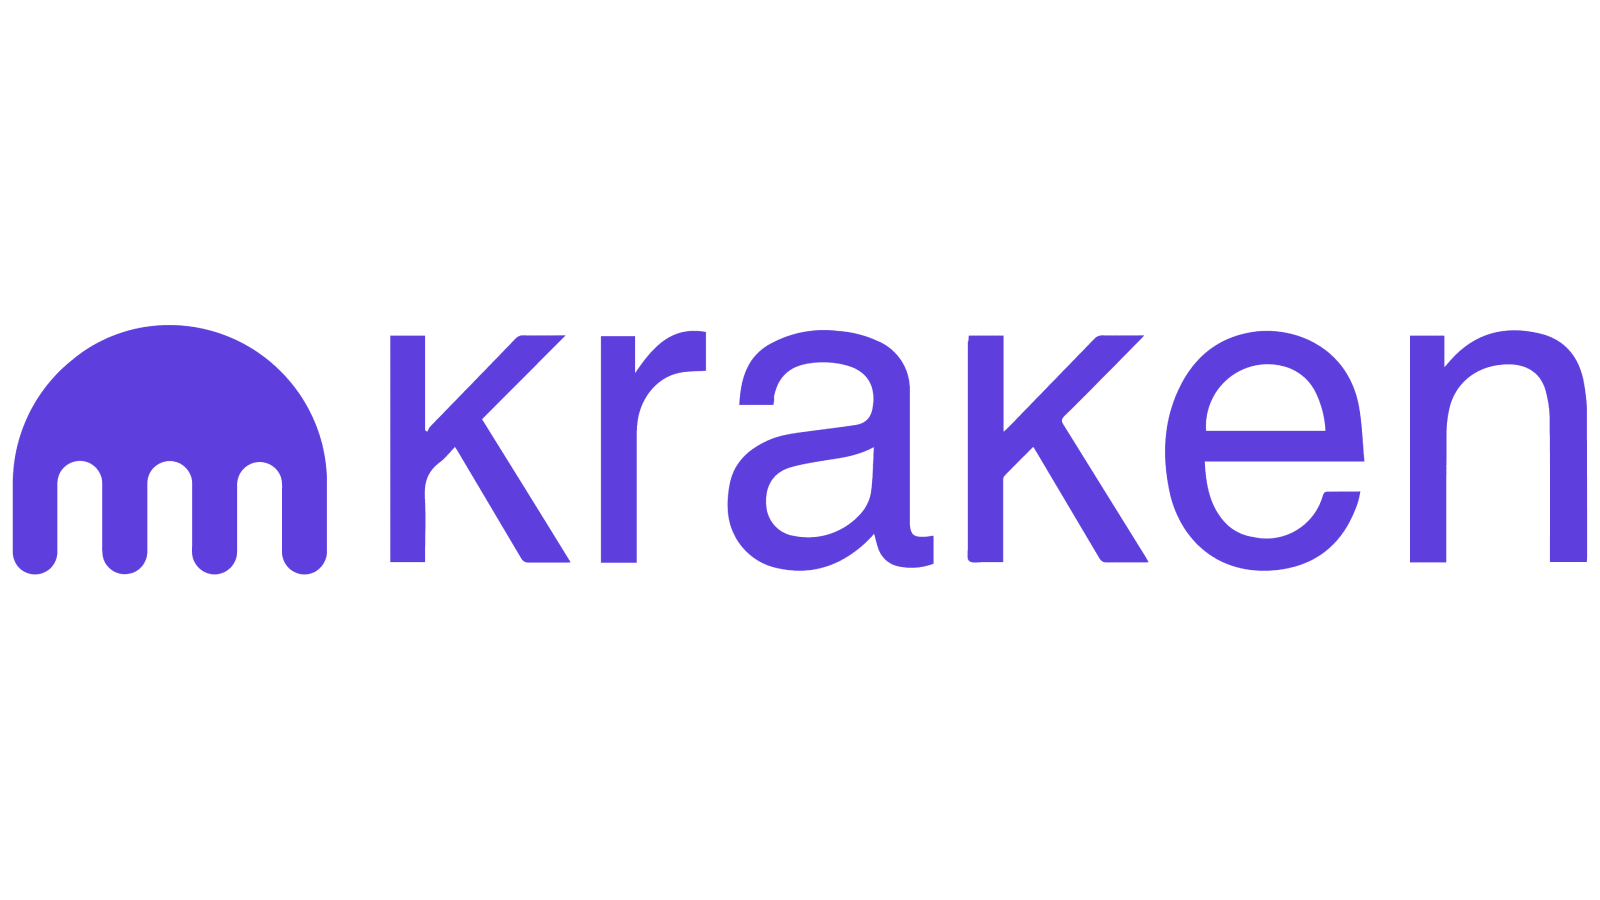 logo Kraken